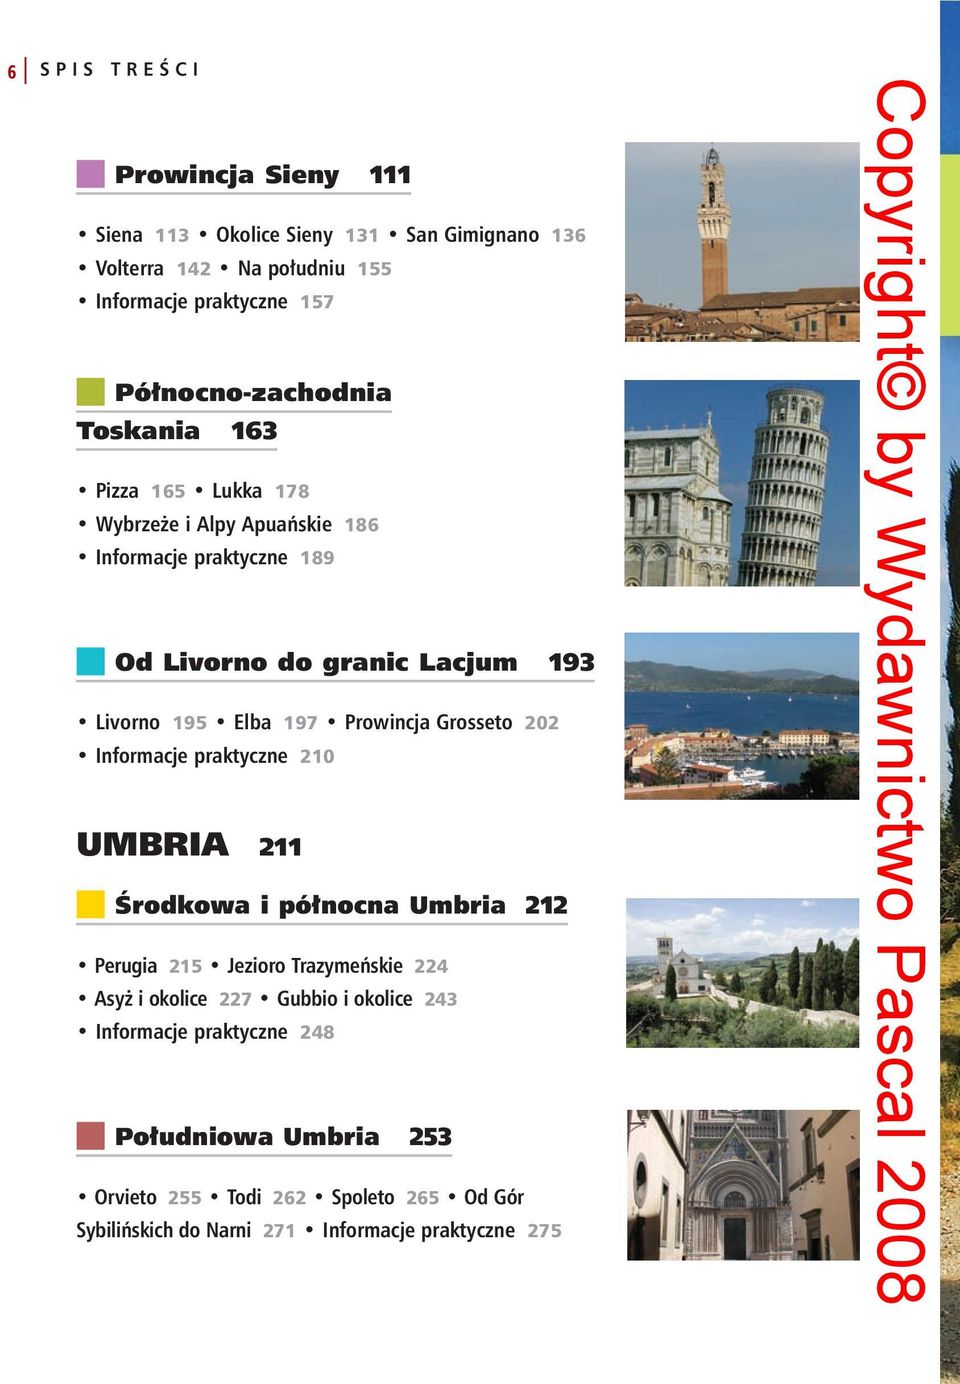 Elba 197 Prowincja Grosseto 202 Informacje praktyczne 210 UMBRIA 211 n Środkowa i północna Umbria 212 Perugia 215 Jezioro Trazymeńskie 224 Asyż i okolice